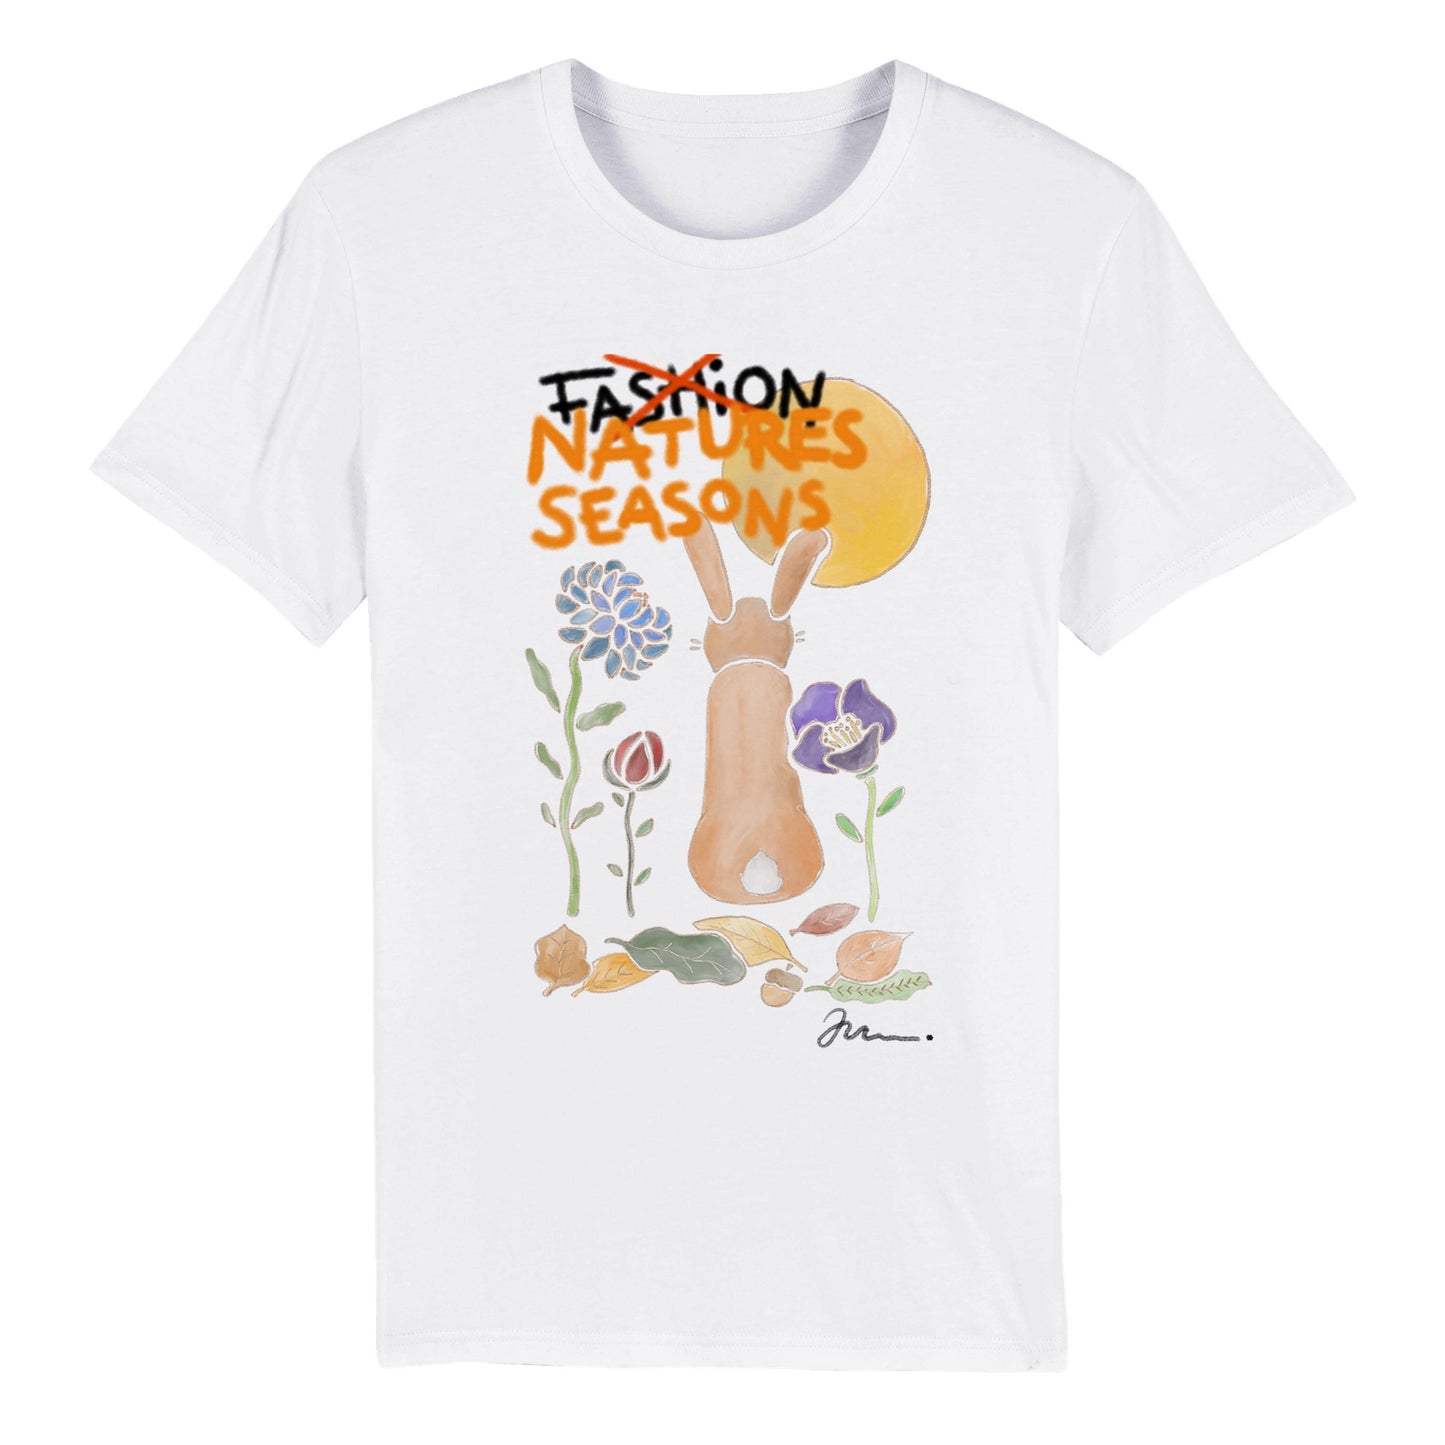 økologisk bomuld t shirt kunst design print med natur og kaniner